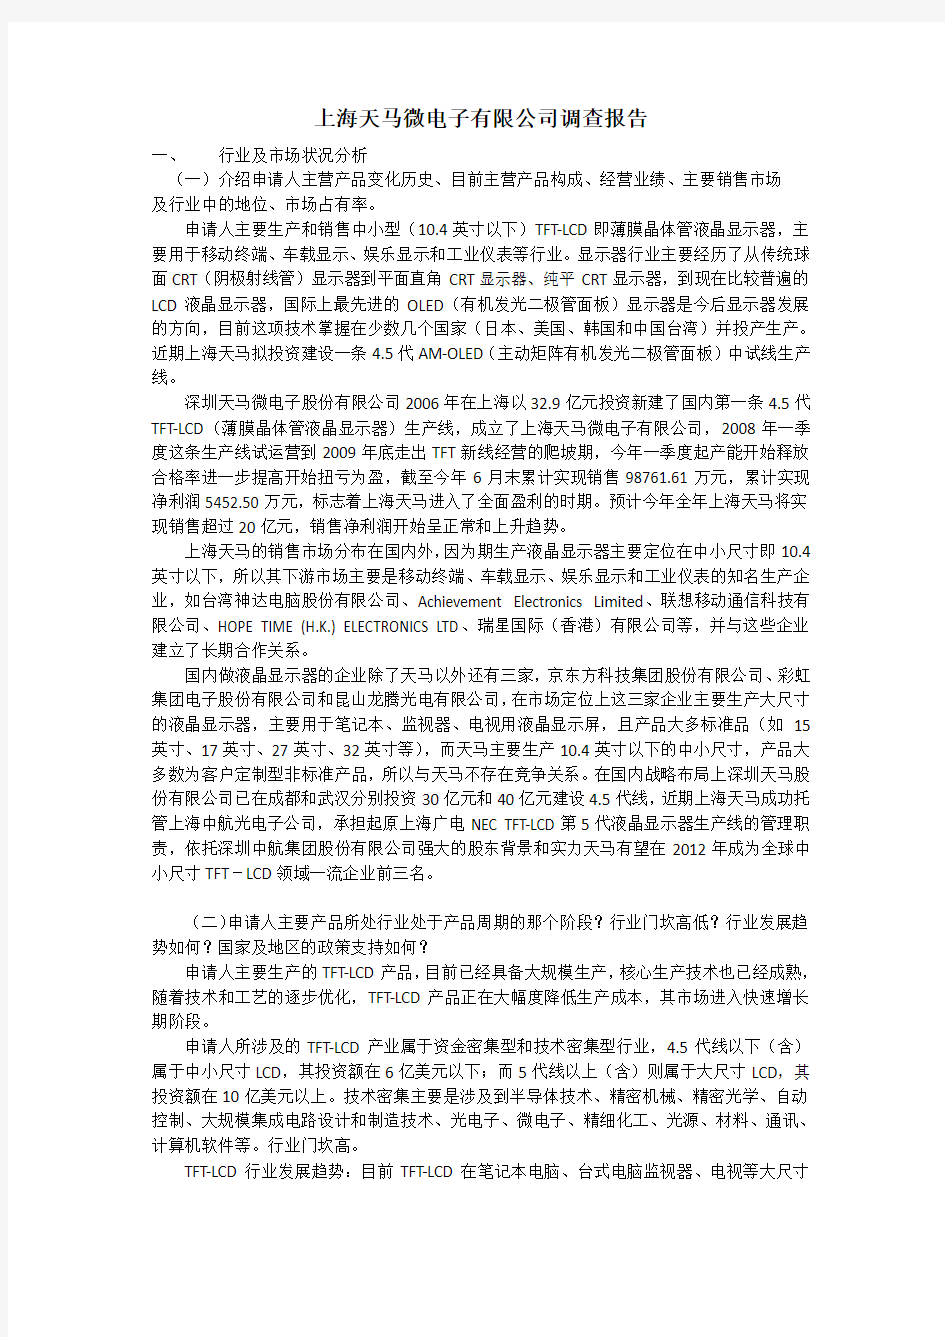 上海天马微电子有限公司调查报告